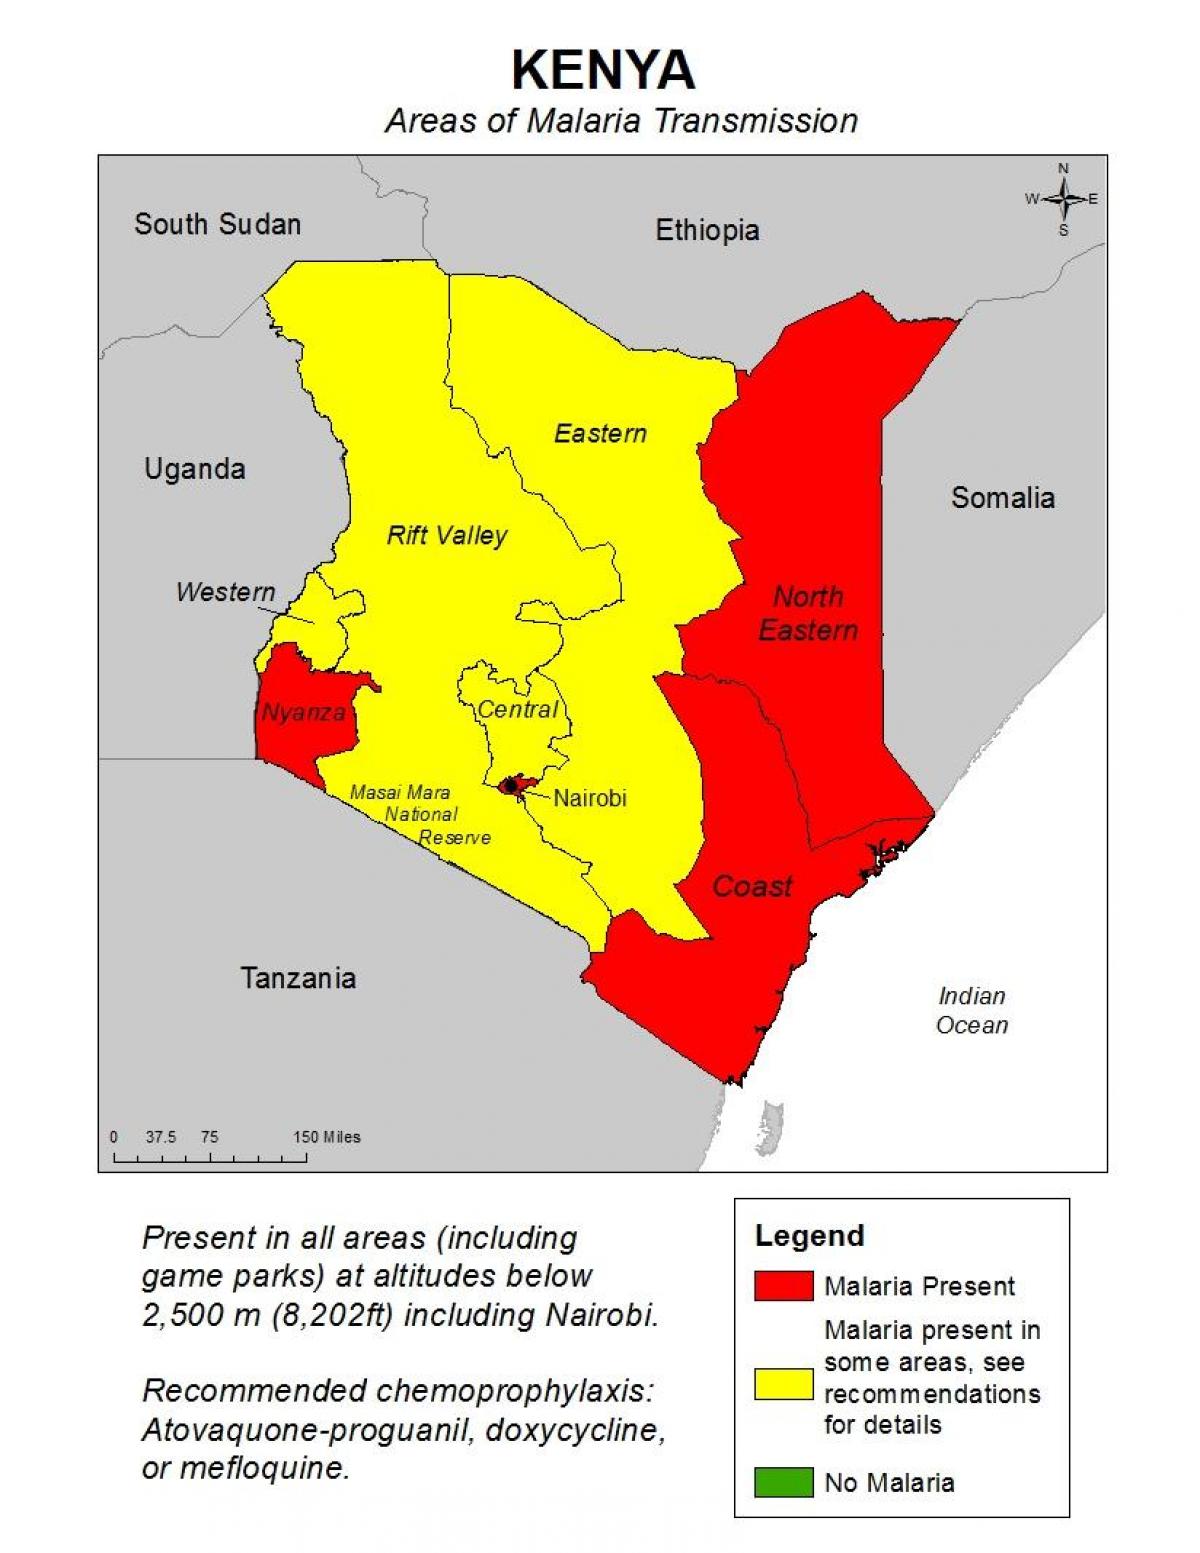 քարտեզ Քենիայում մալարիայի